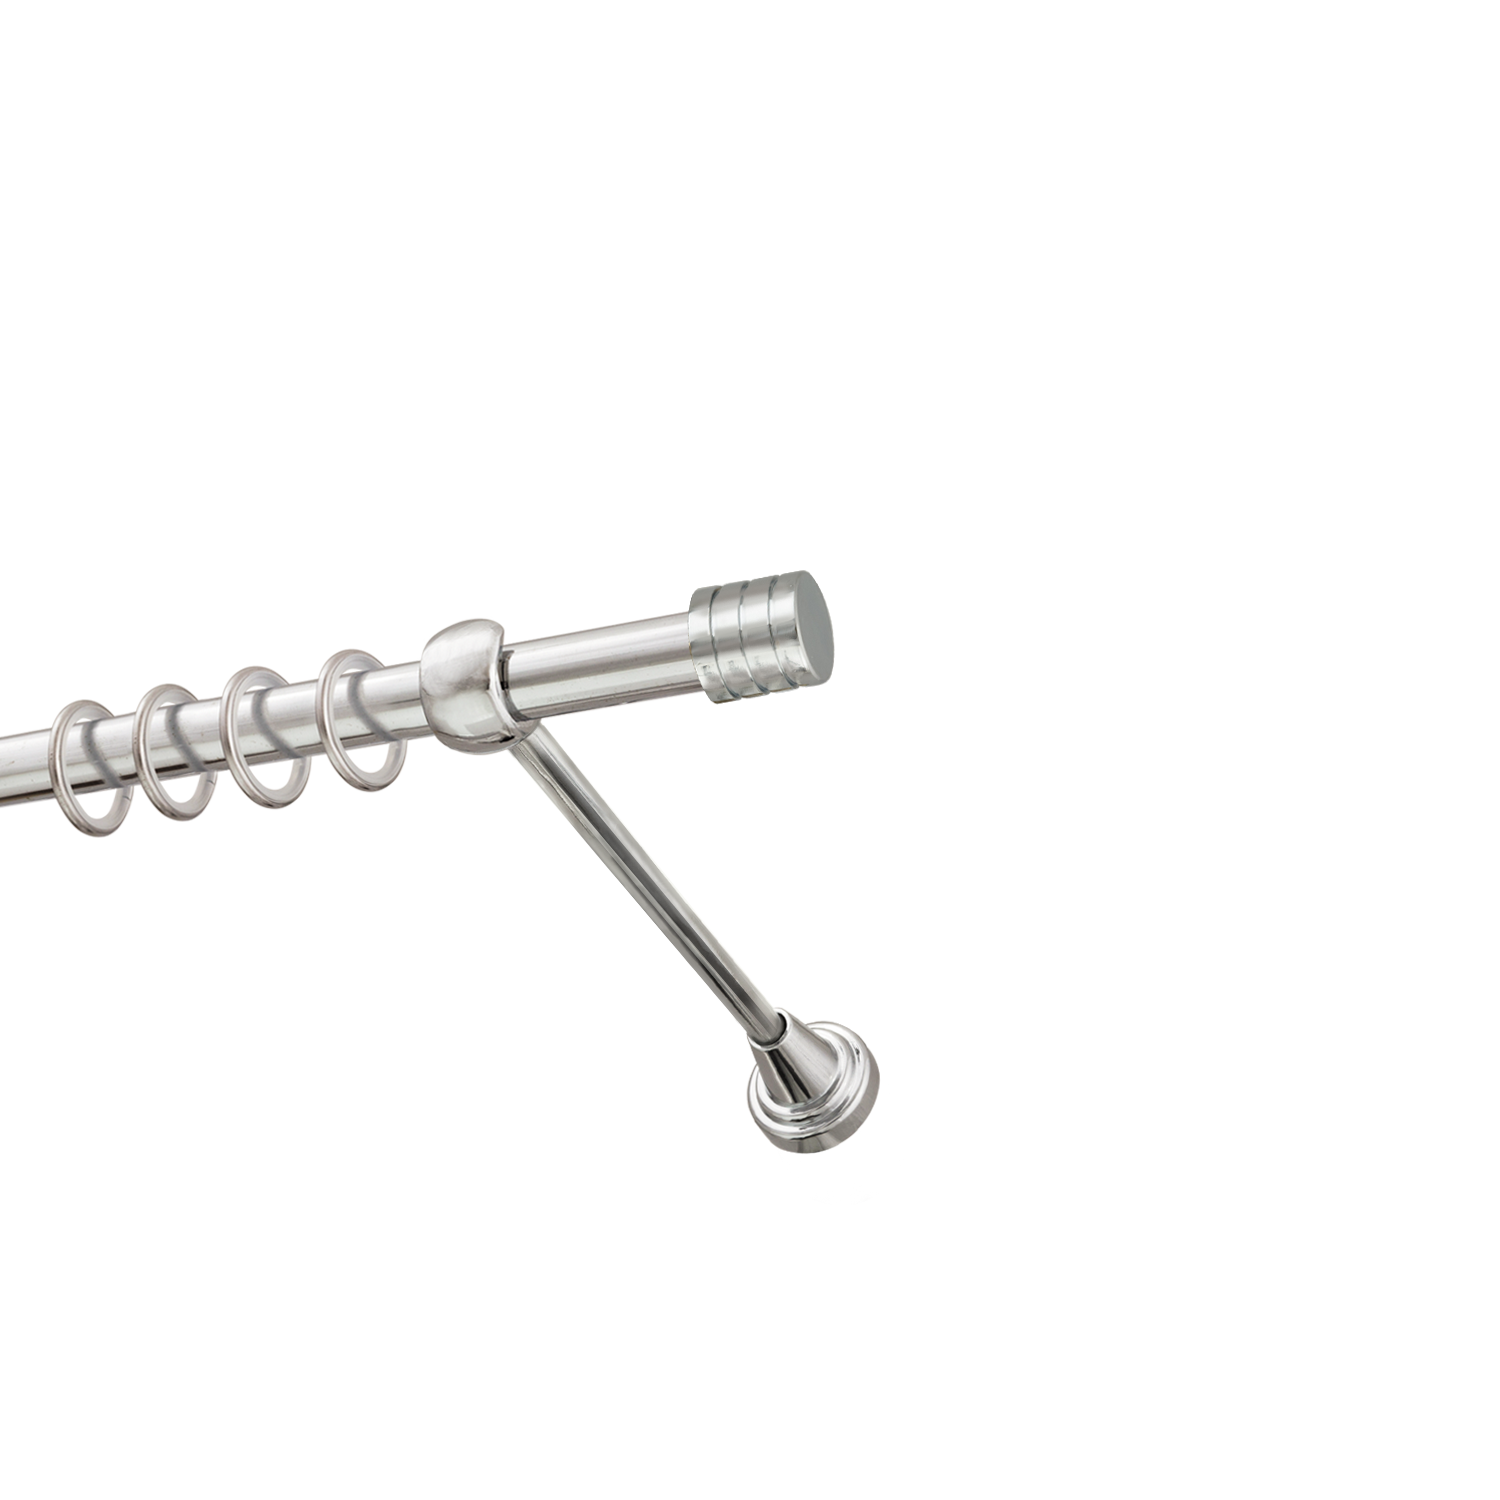 Металлический карниз для штор Подиум, однорядный 16 мм, серебро, гладкая штанга, длина 140 см - фото Wikidecor.ru